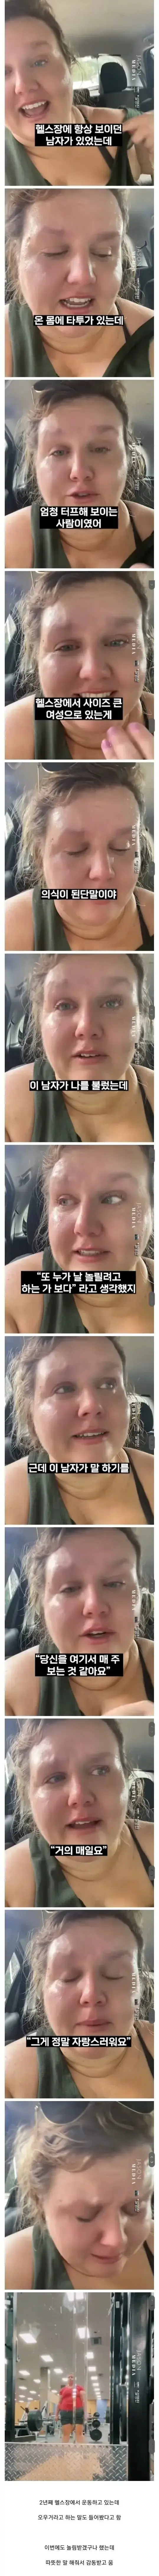 외모 때문에 치욕받는 초고도비만 백인여성 | mbong.kr 엠봉